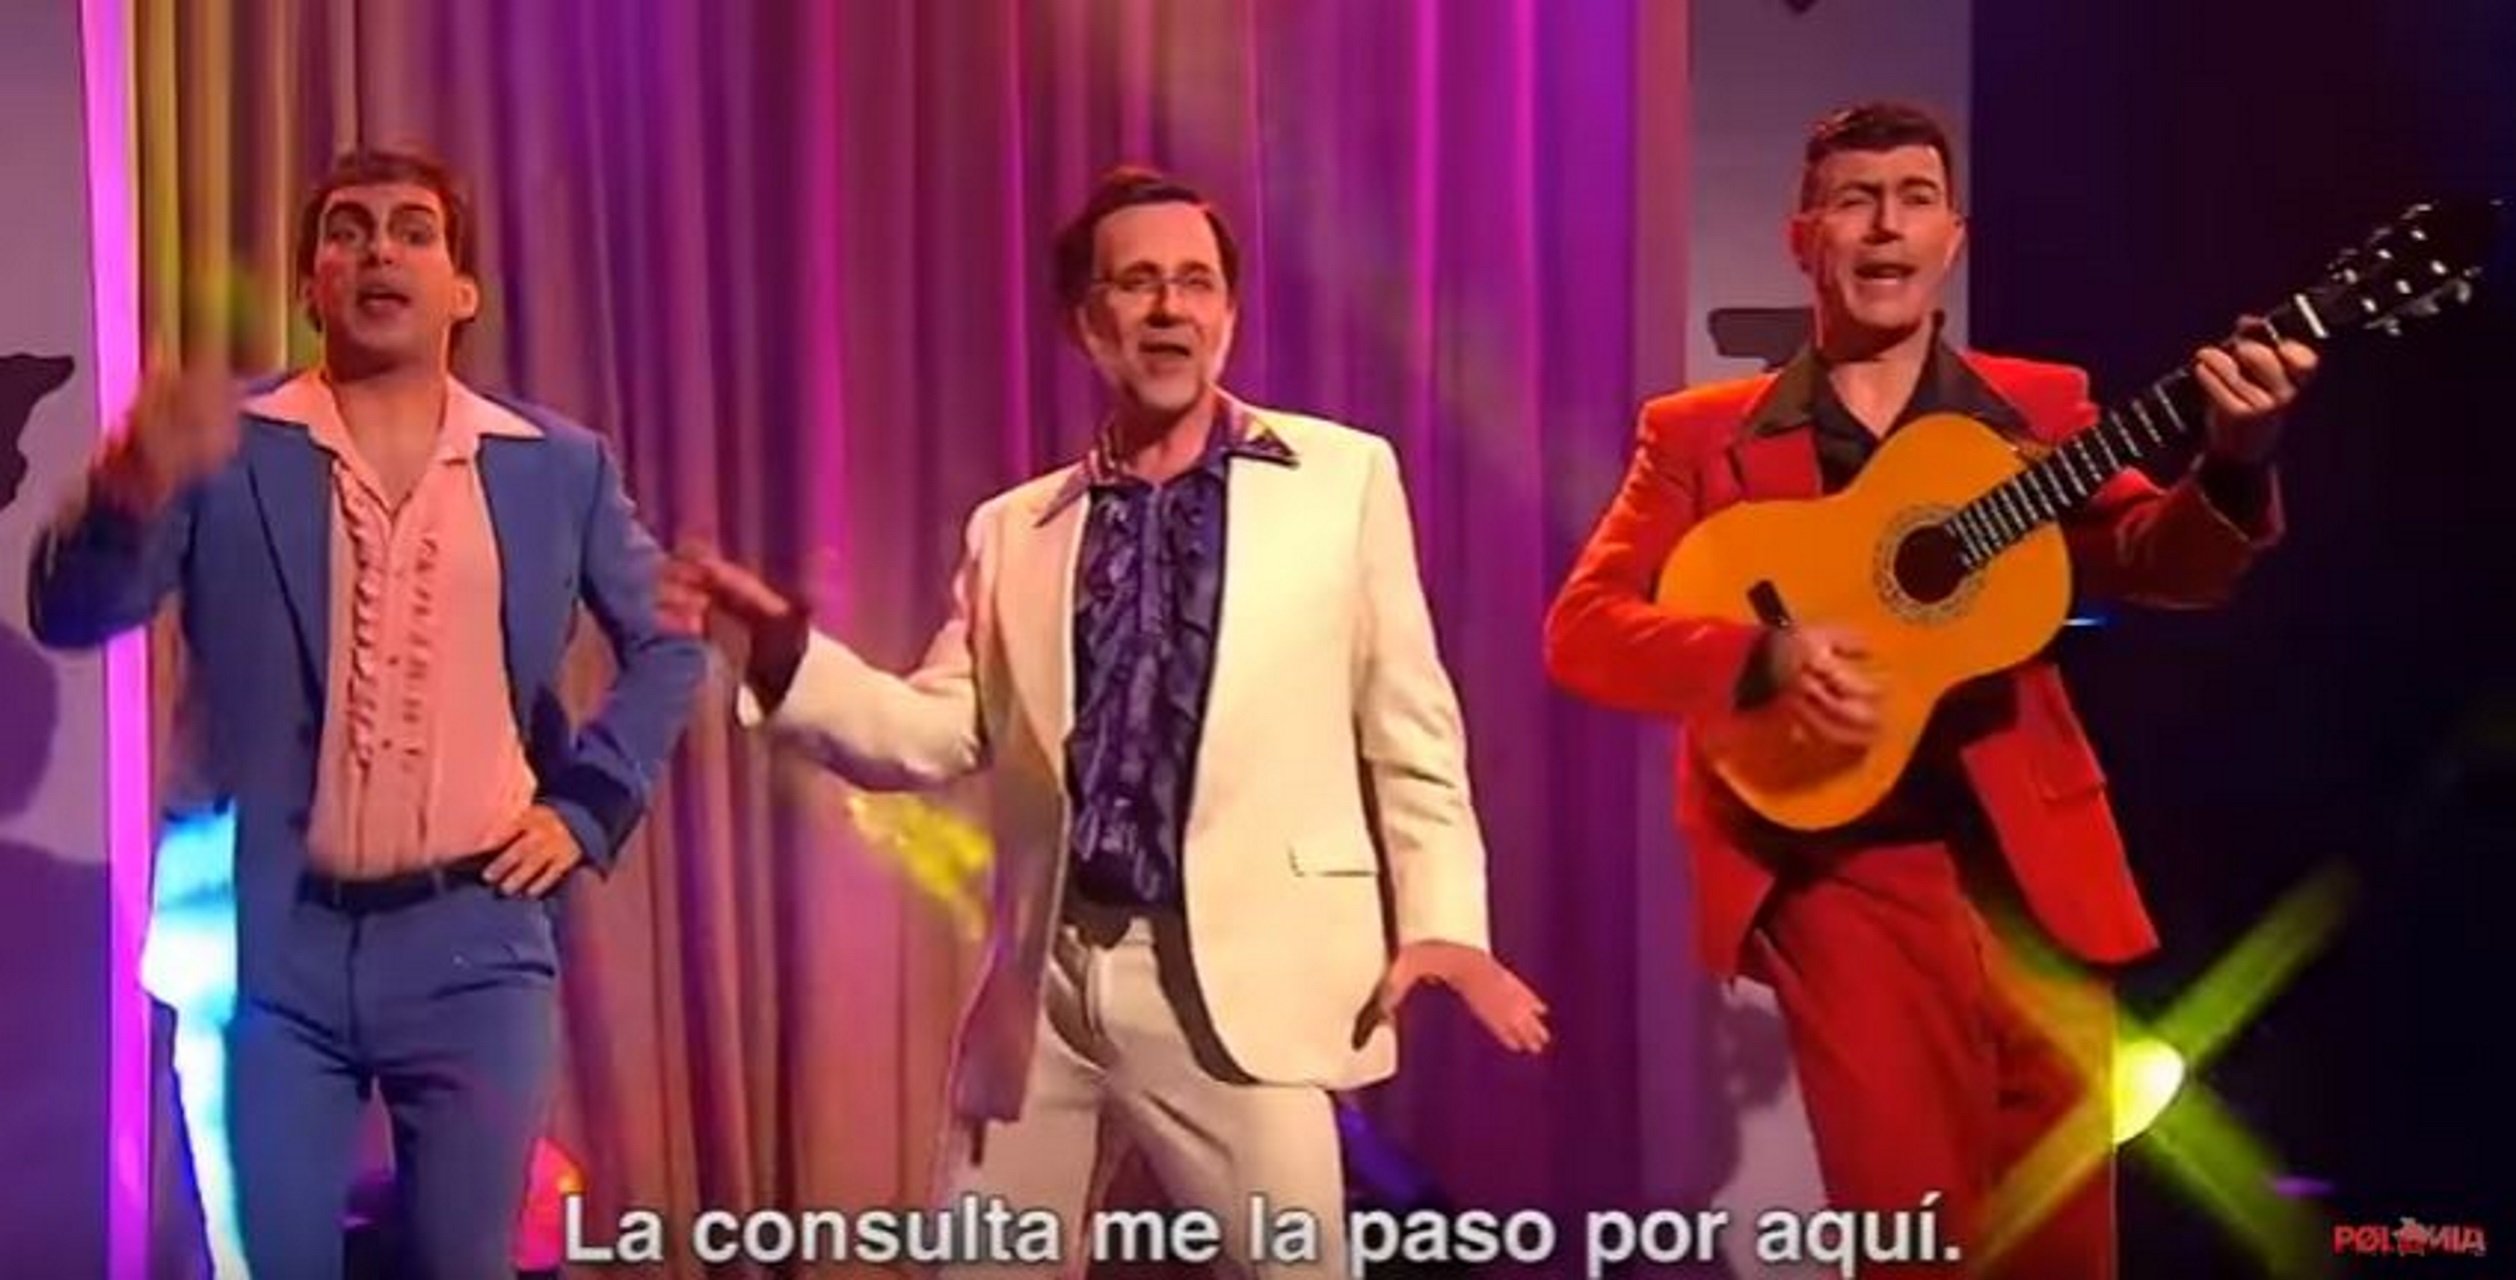 Rajoy, Sánchez y Rivera cantan por la unidad de España en 'Polònia'